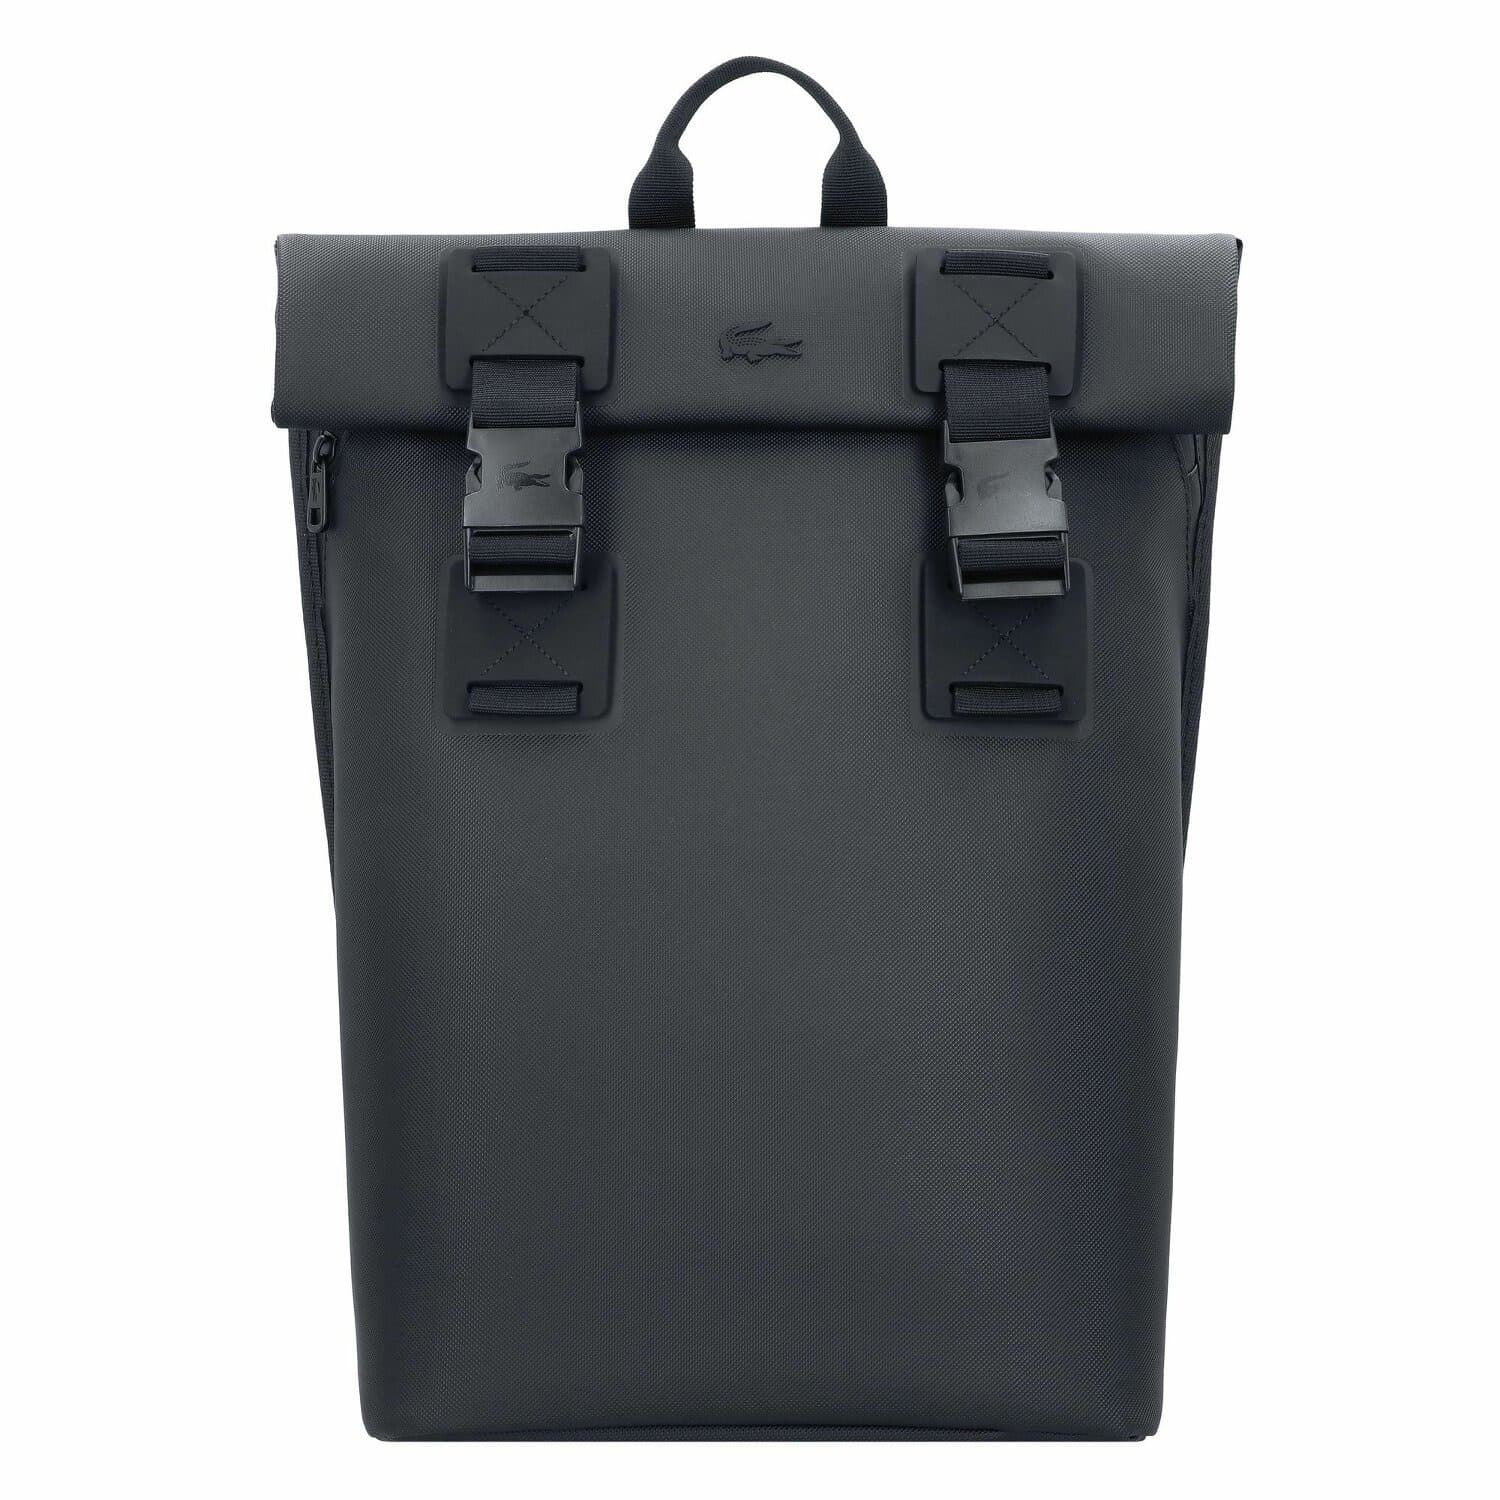 Mochila Lacoste backpack noir NH444000 000 - Imagen 1